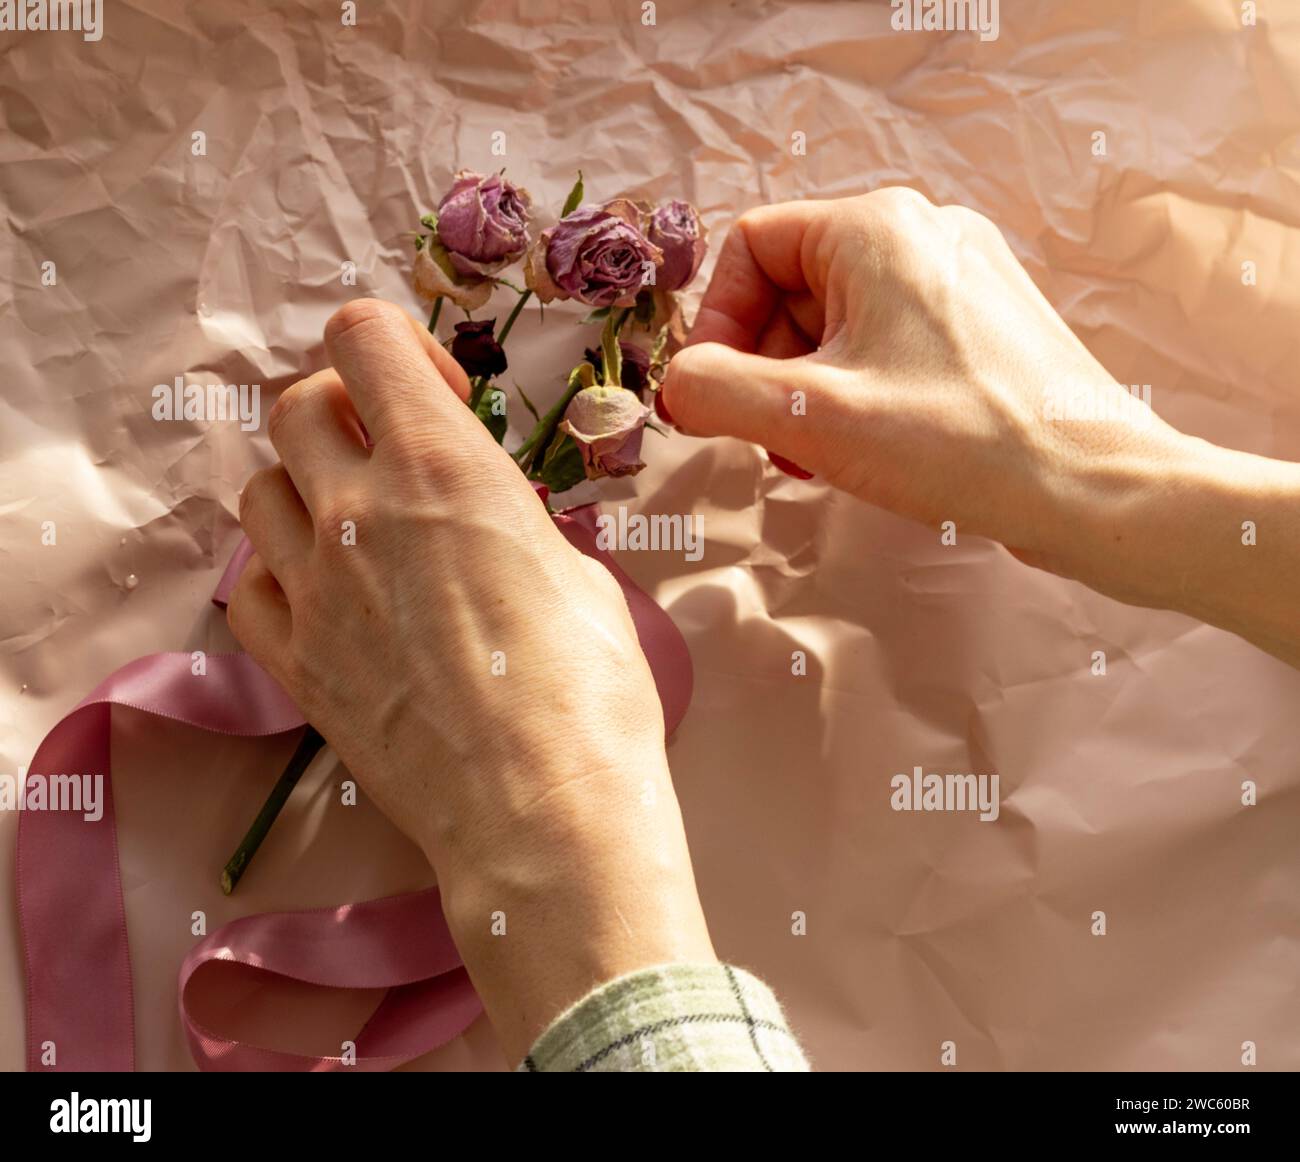 Konzeptaufnahme des Hintergrundthemas, Geschenkpapier, getrocknete Rosen, Blumen und andere Gestecke. Stockfoto